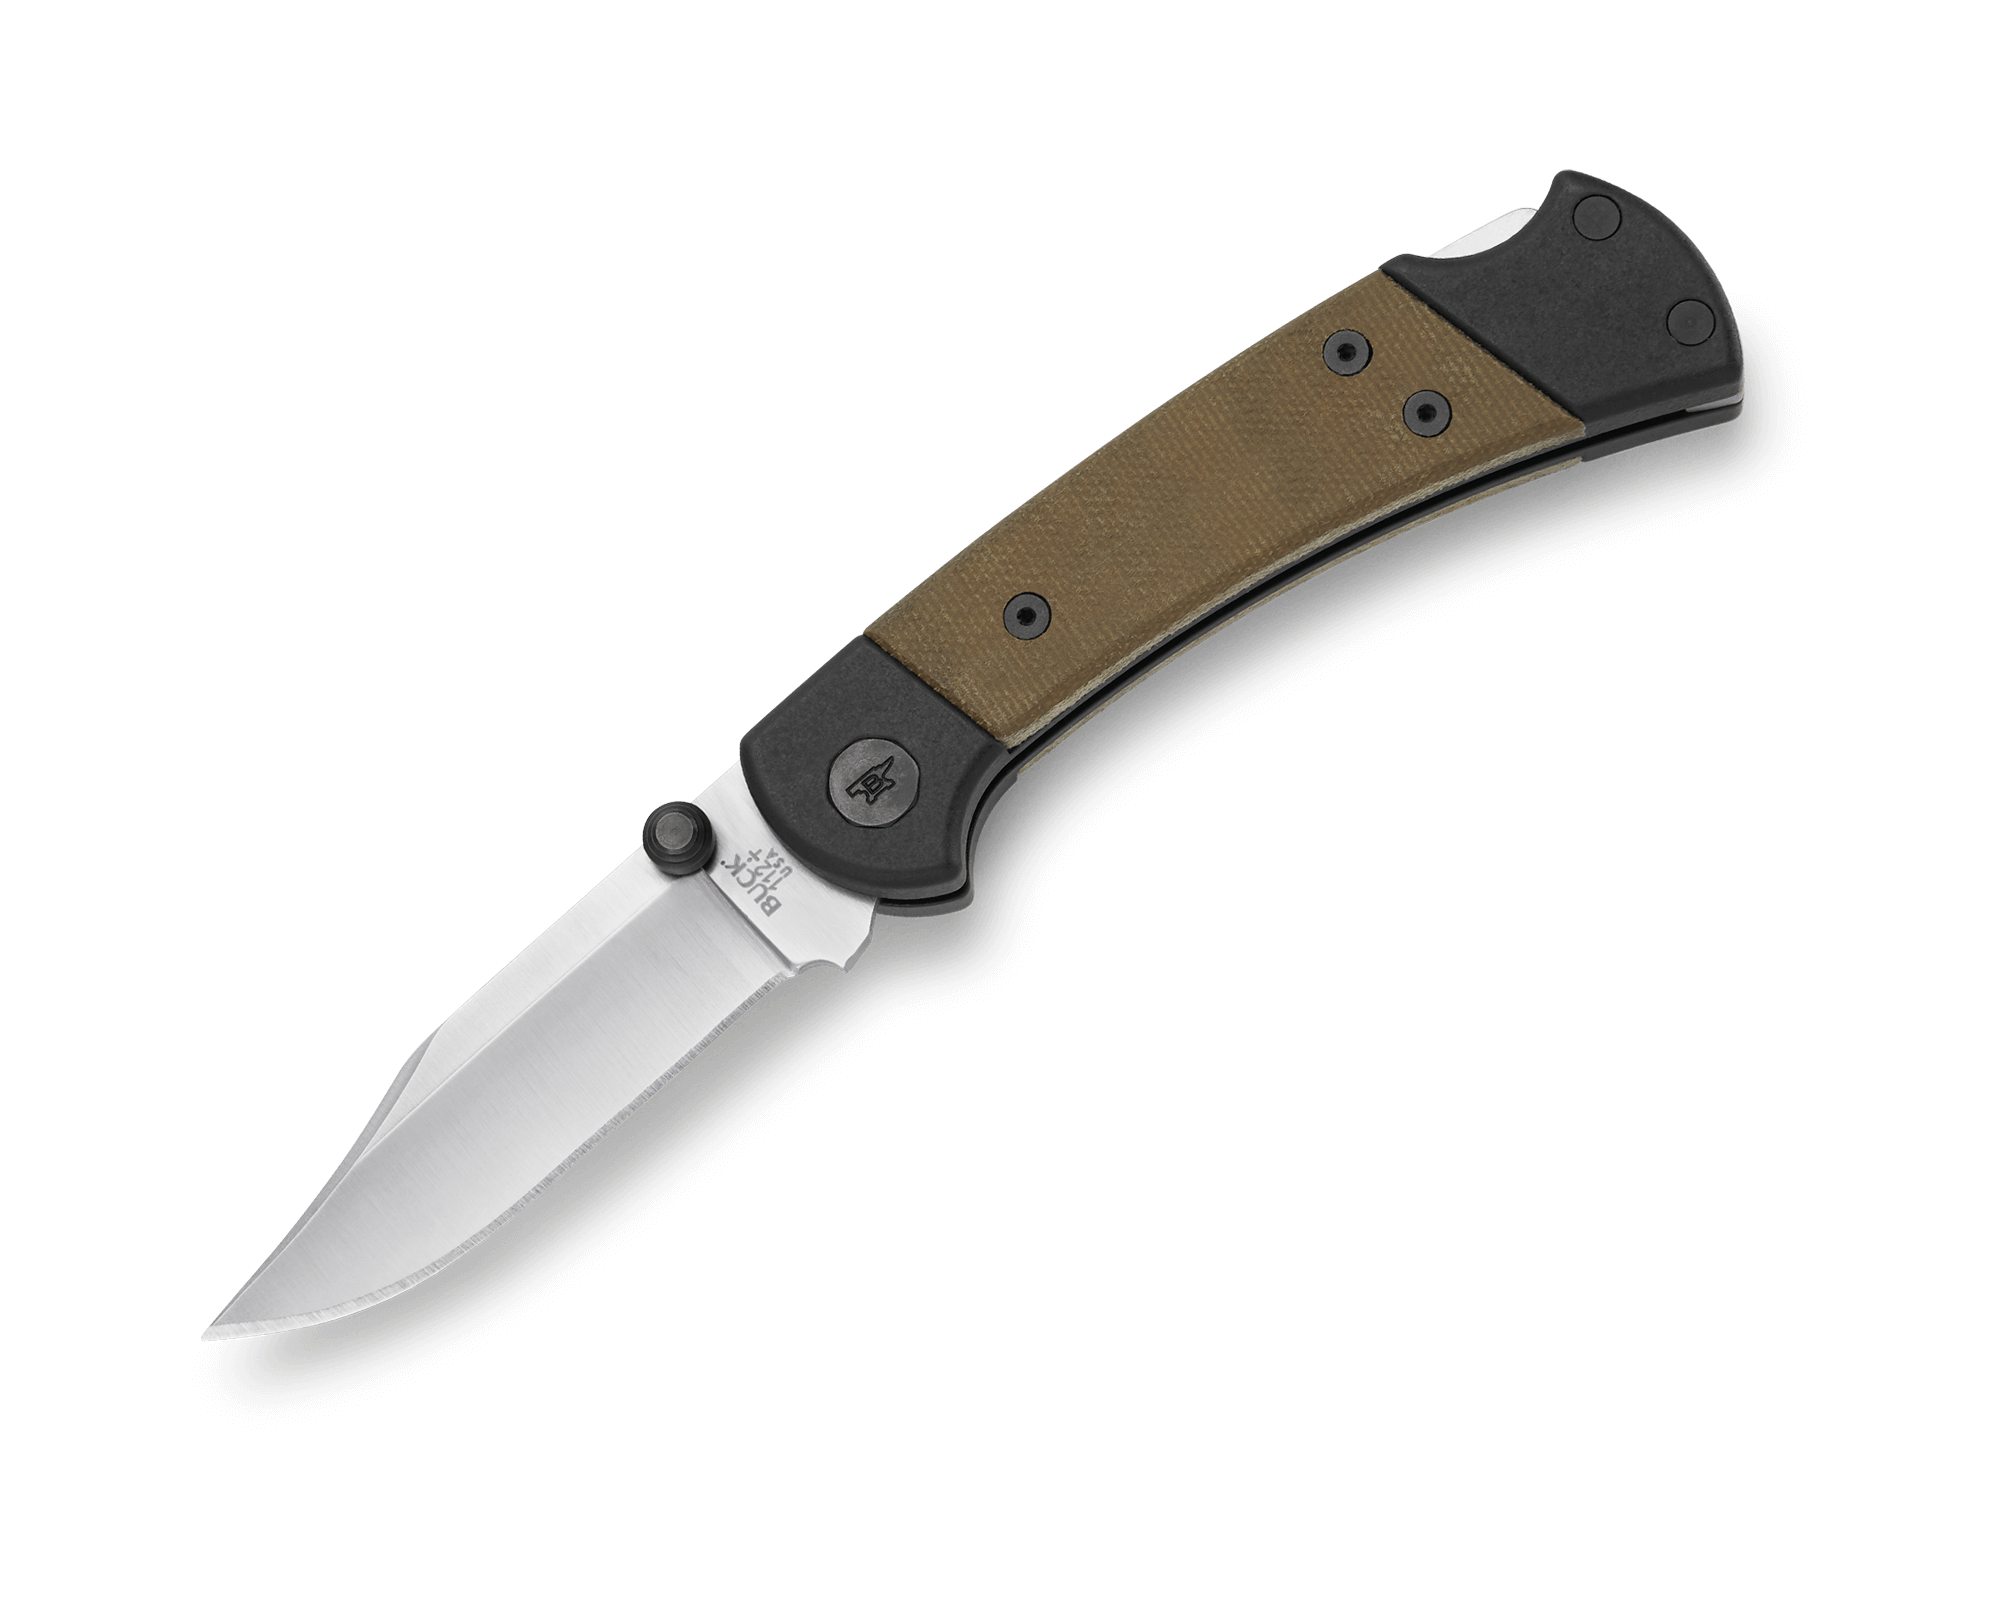 112 Ranger Sport Knife